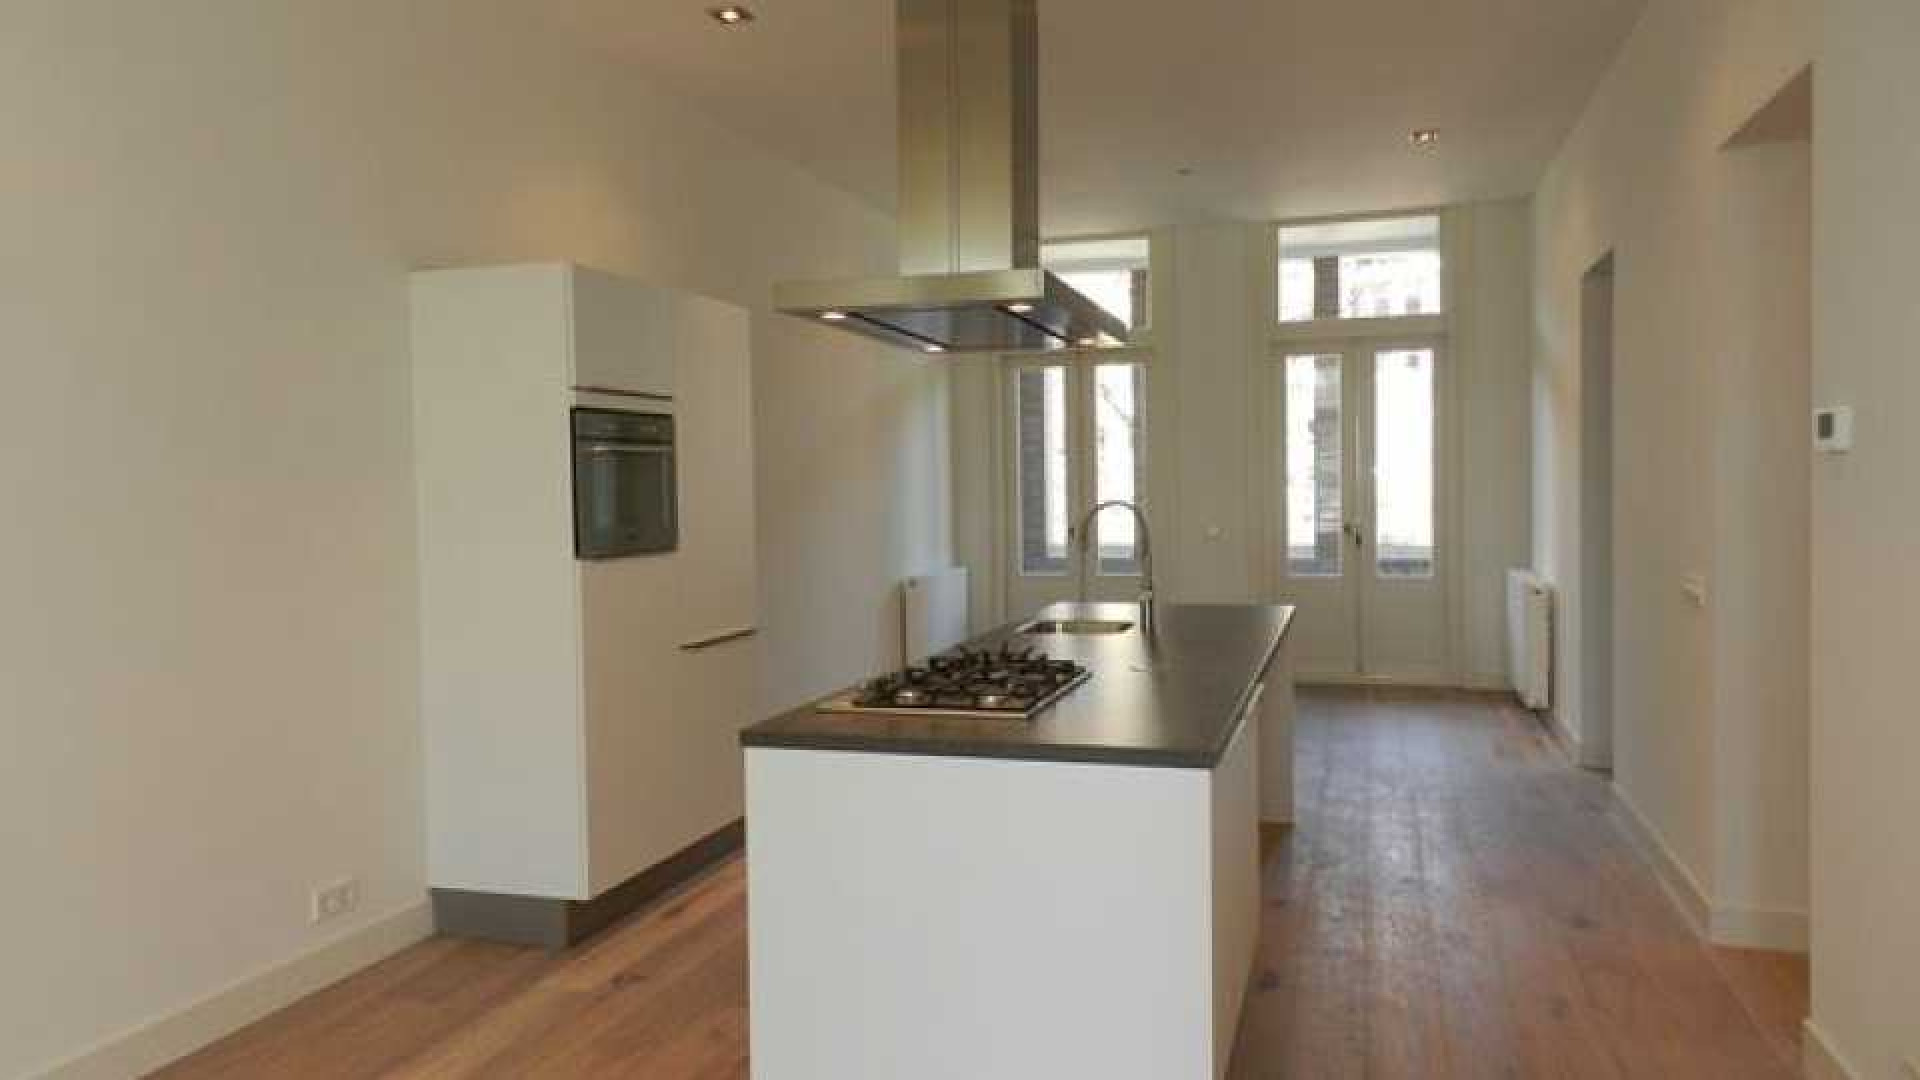 Frank Rijkaard zoekt huurder voor zijn zeer luxe driekamer appartement. Zie foto's